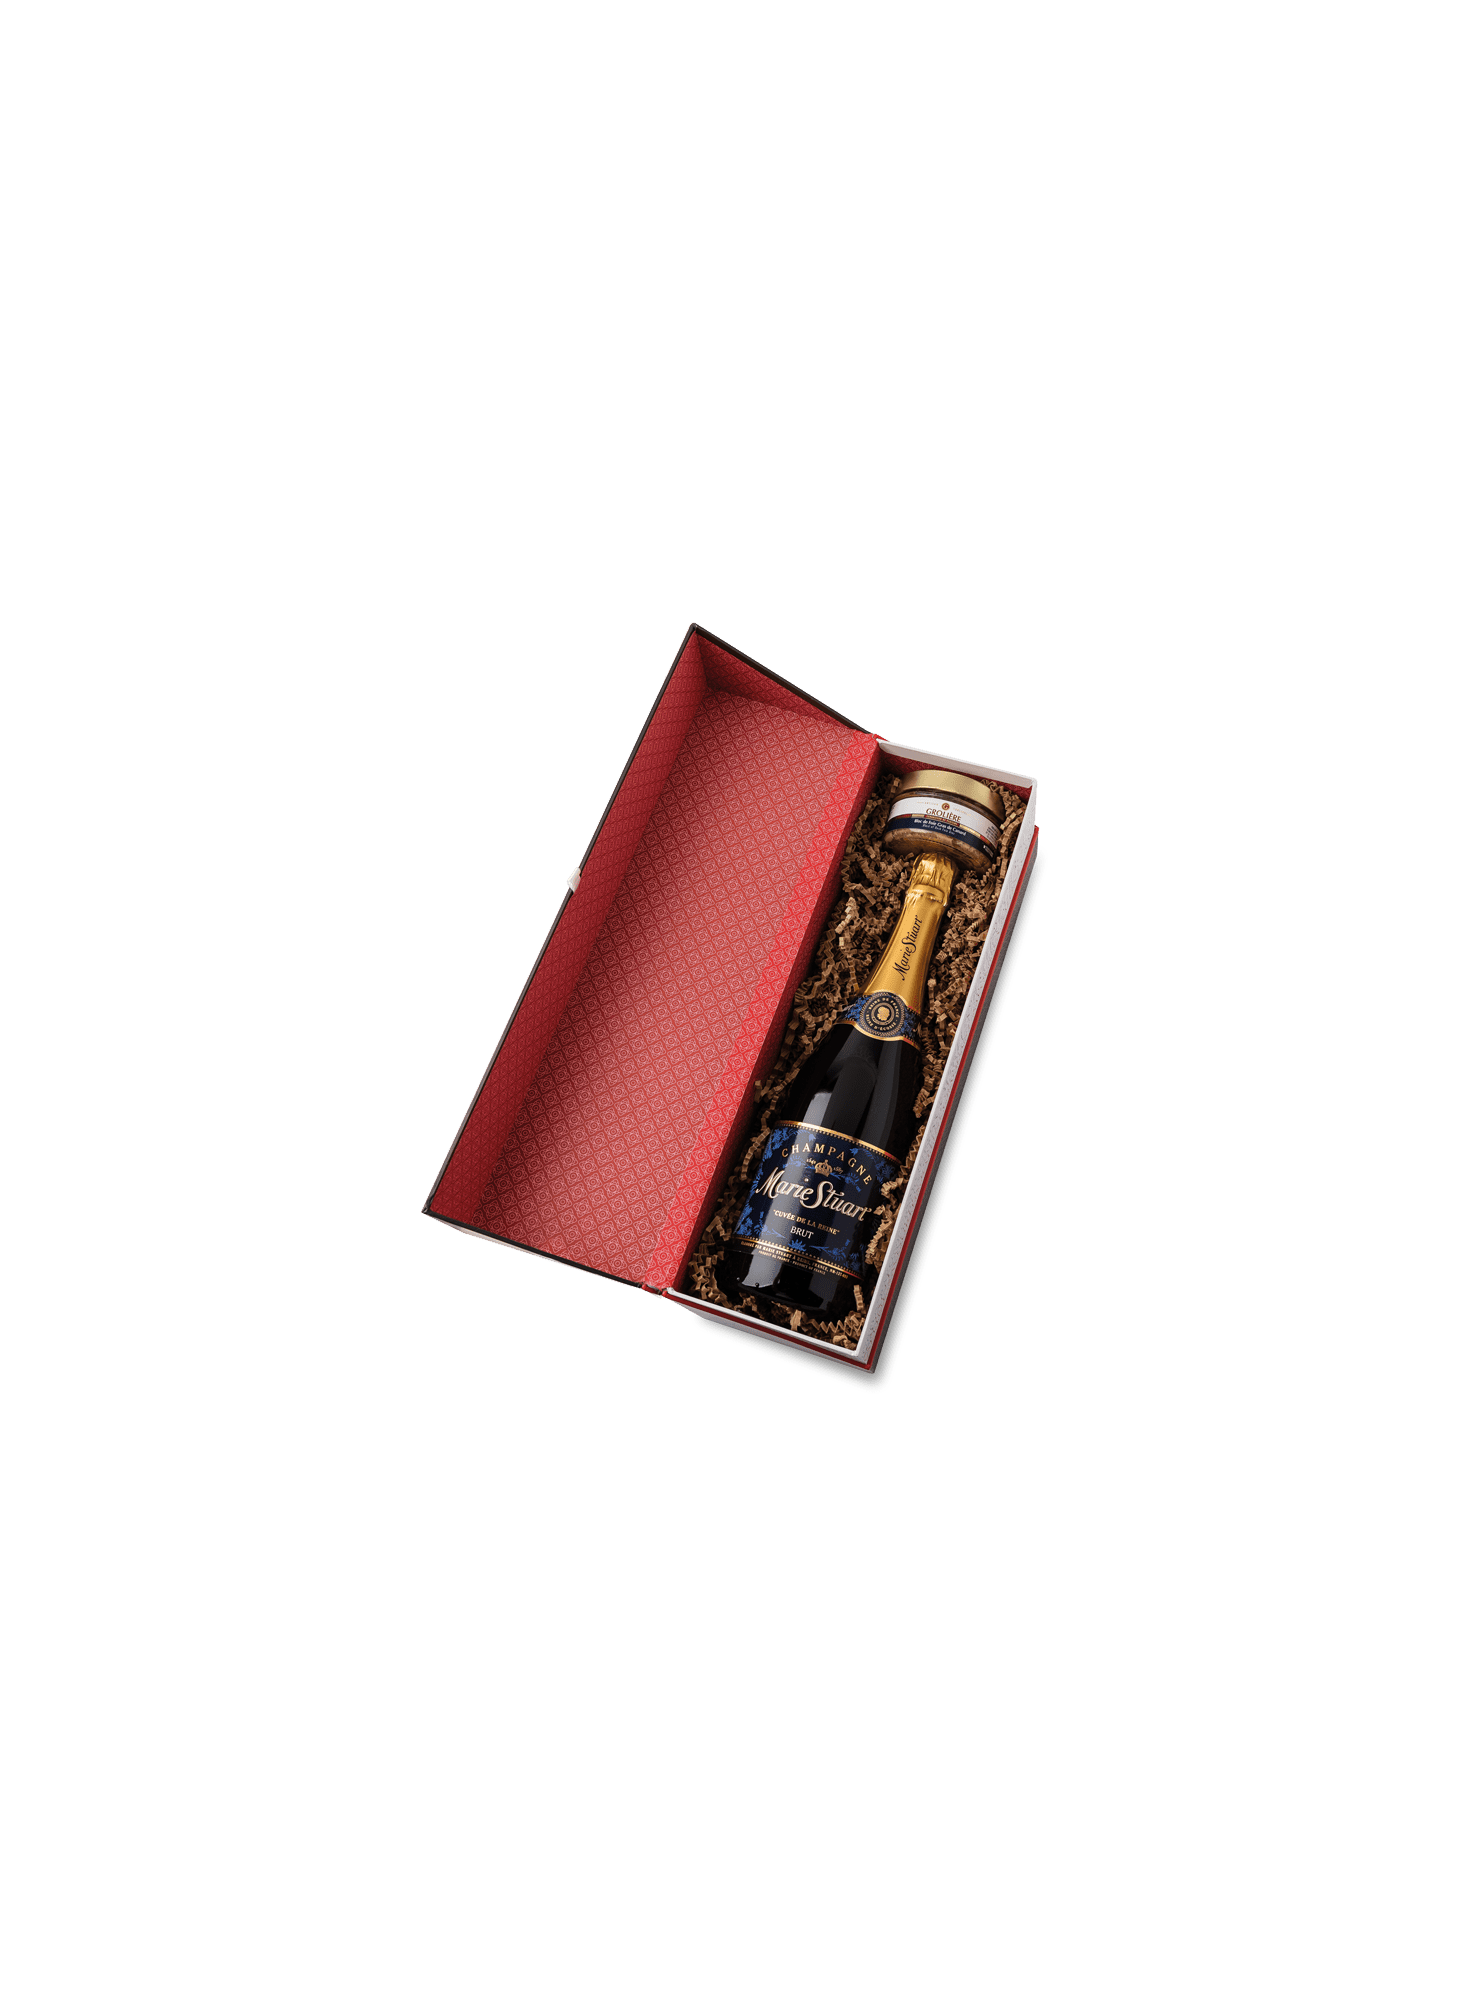 gift-box-Brantome-Bloc-Foie-gras-champagne